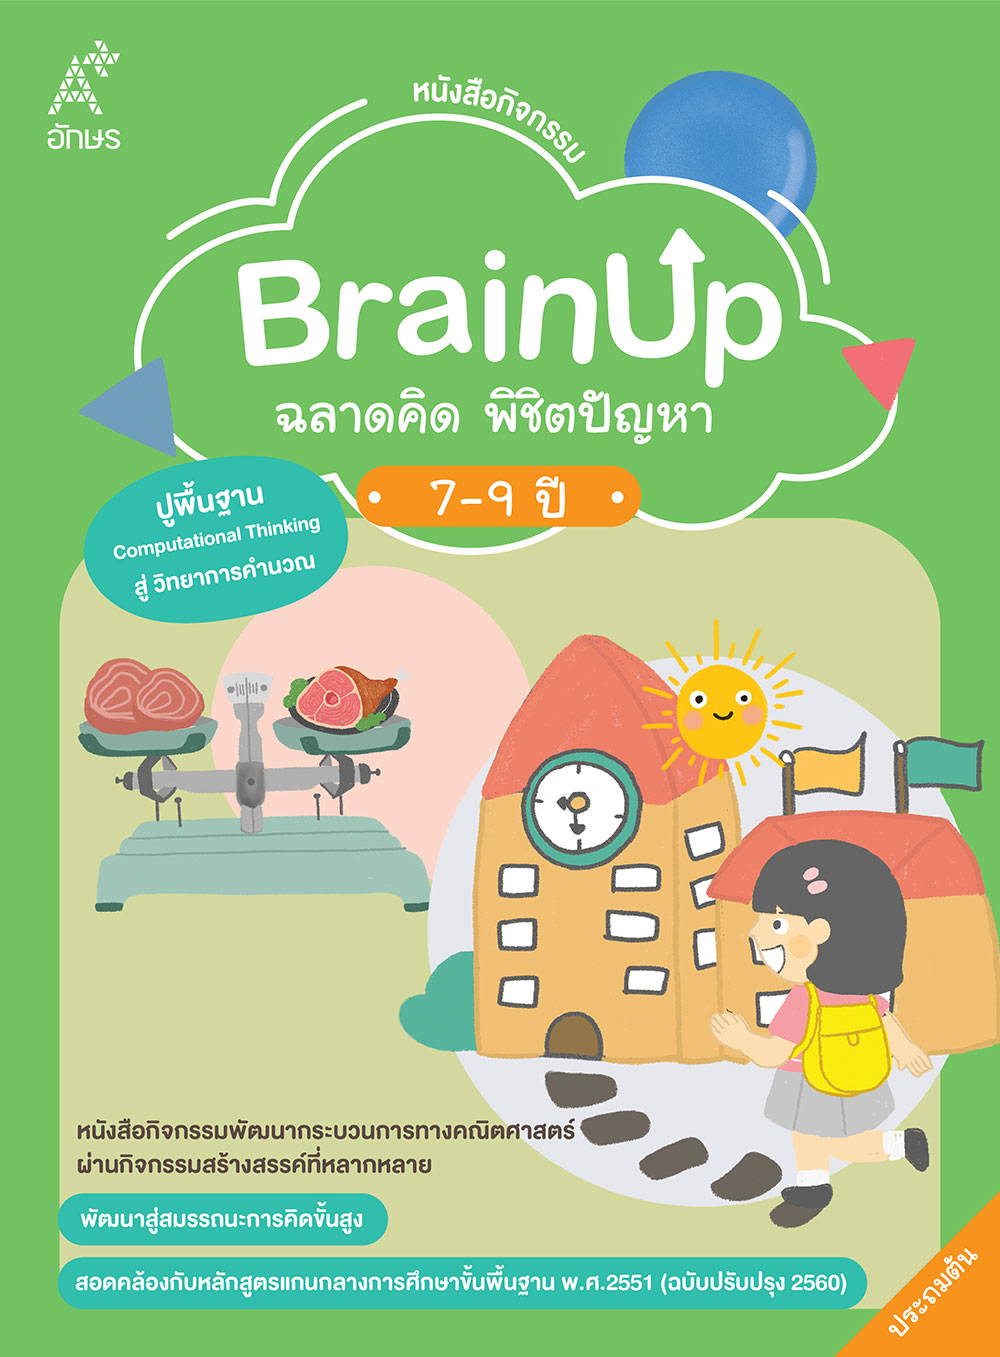 หนังสือกิจกรรม BrainUp ฉลาดคิด พิชิตปัญหา อายุ 7-9 ปี